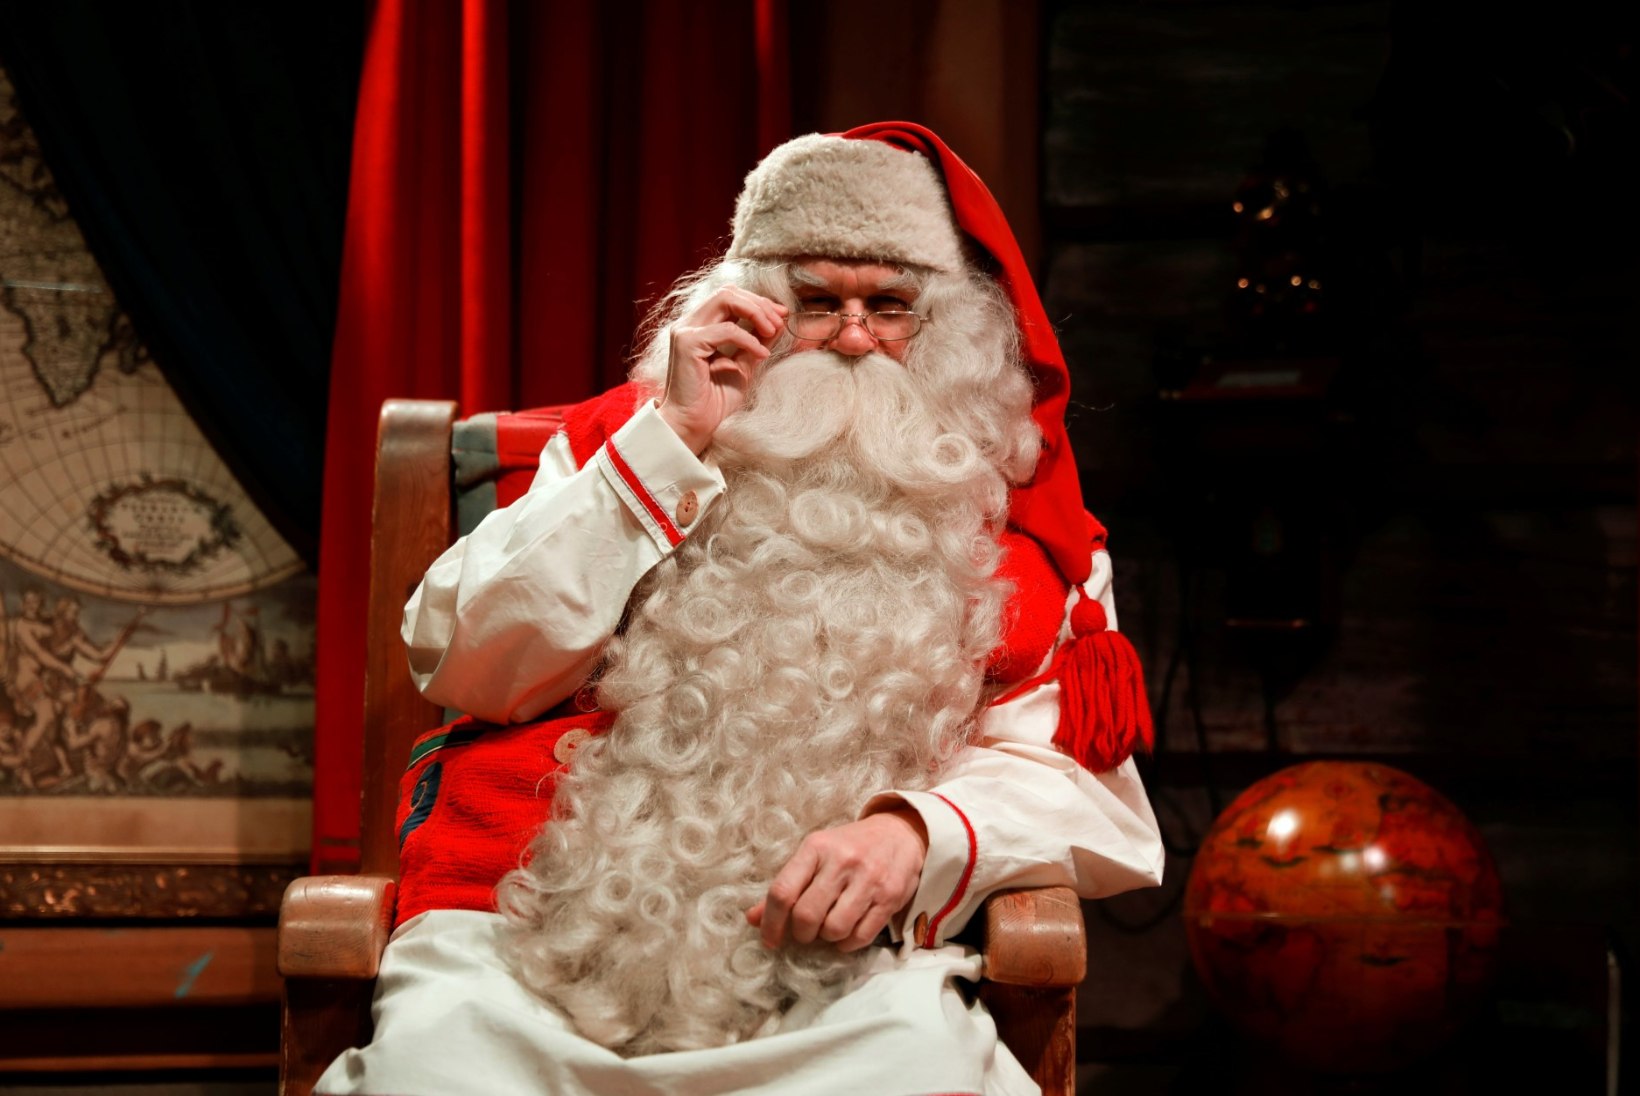 VAATA OTSEÜLEKANNET: jõuluvana avab Lapimaal pühadehooaja